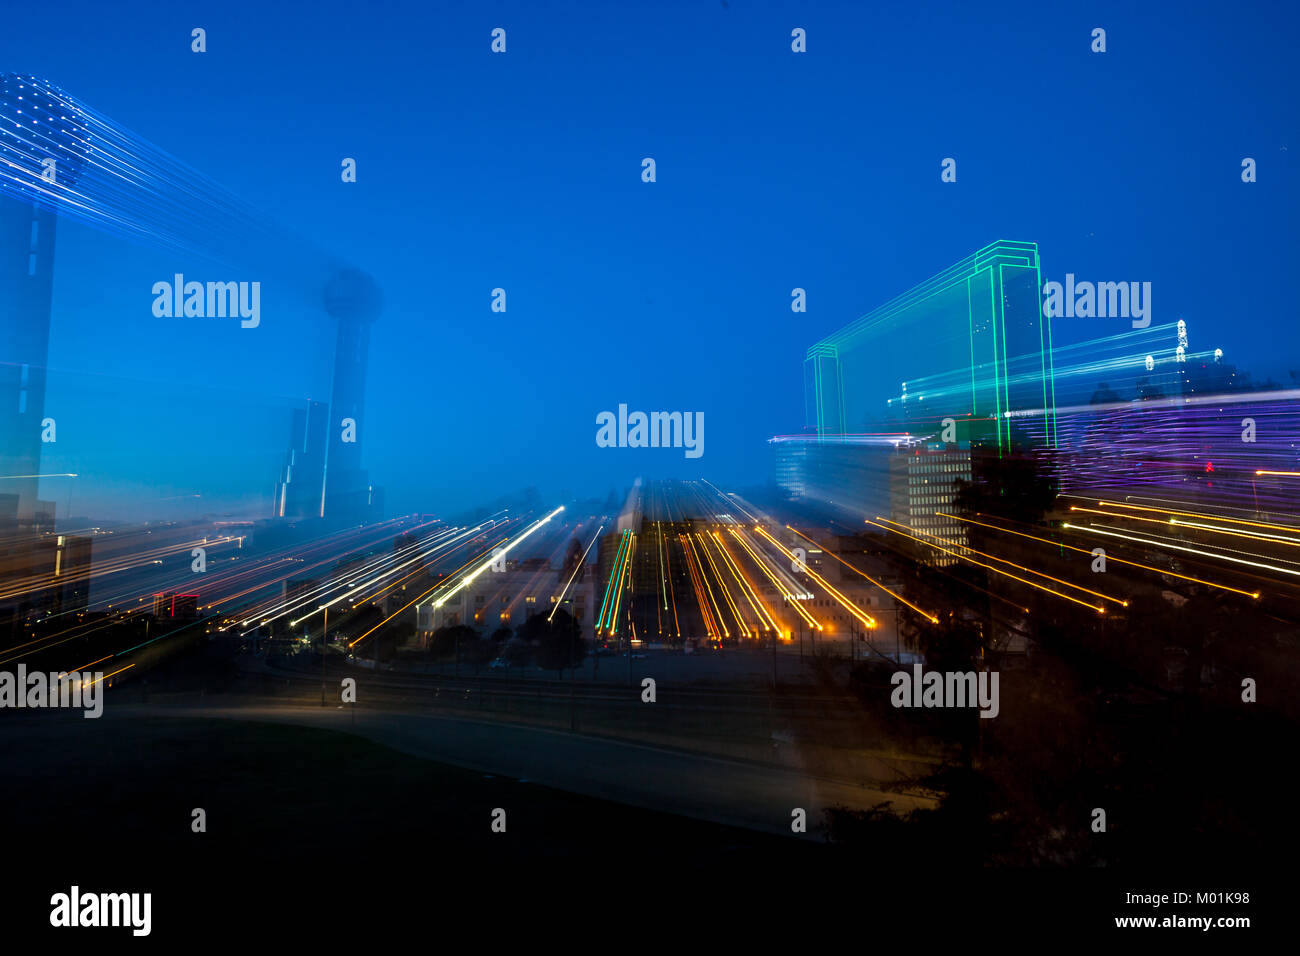 Vista de la ciudad de noche con estelas de luz - ciudad de movimiento rápido del concepto de la vida Foto de stock